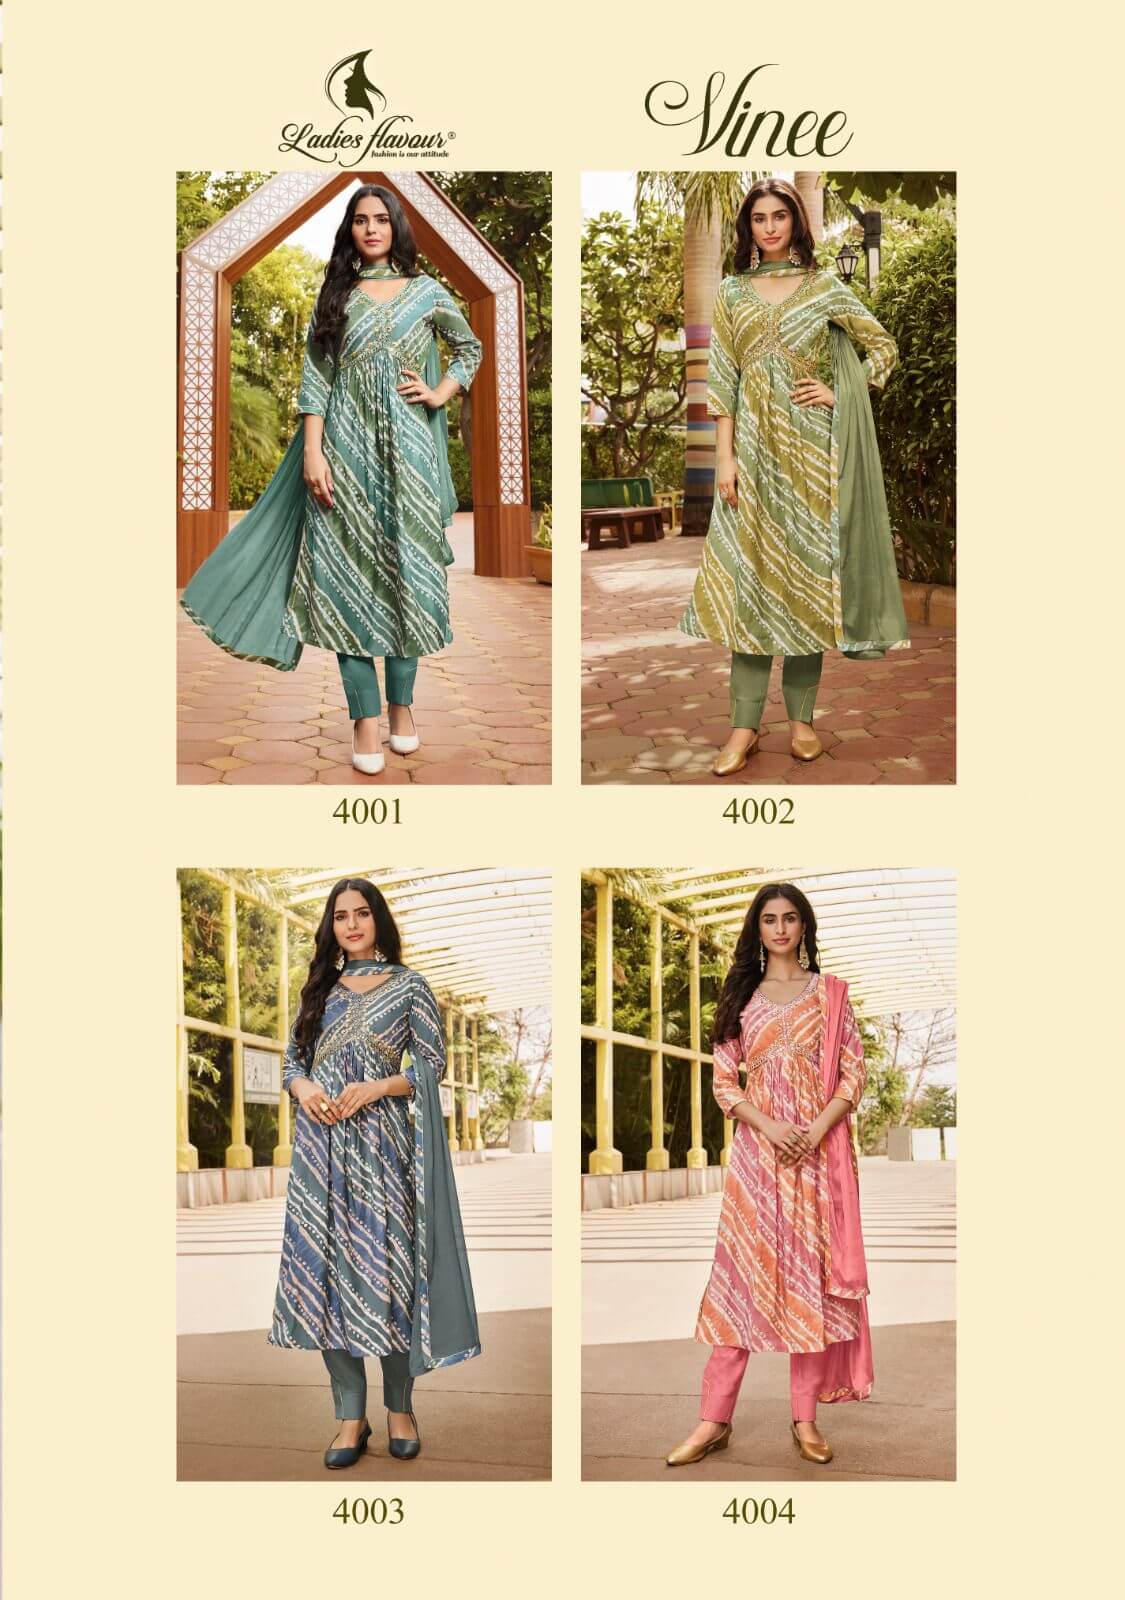 Ladies Flavour Vinee Alia Cut Salwar Kameez collection 8